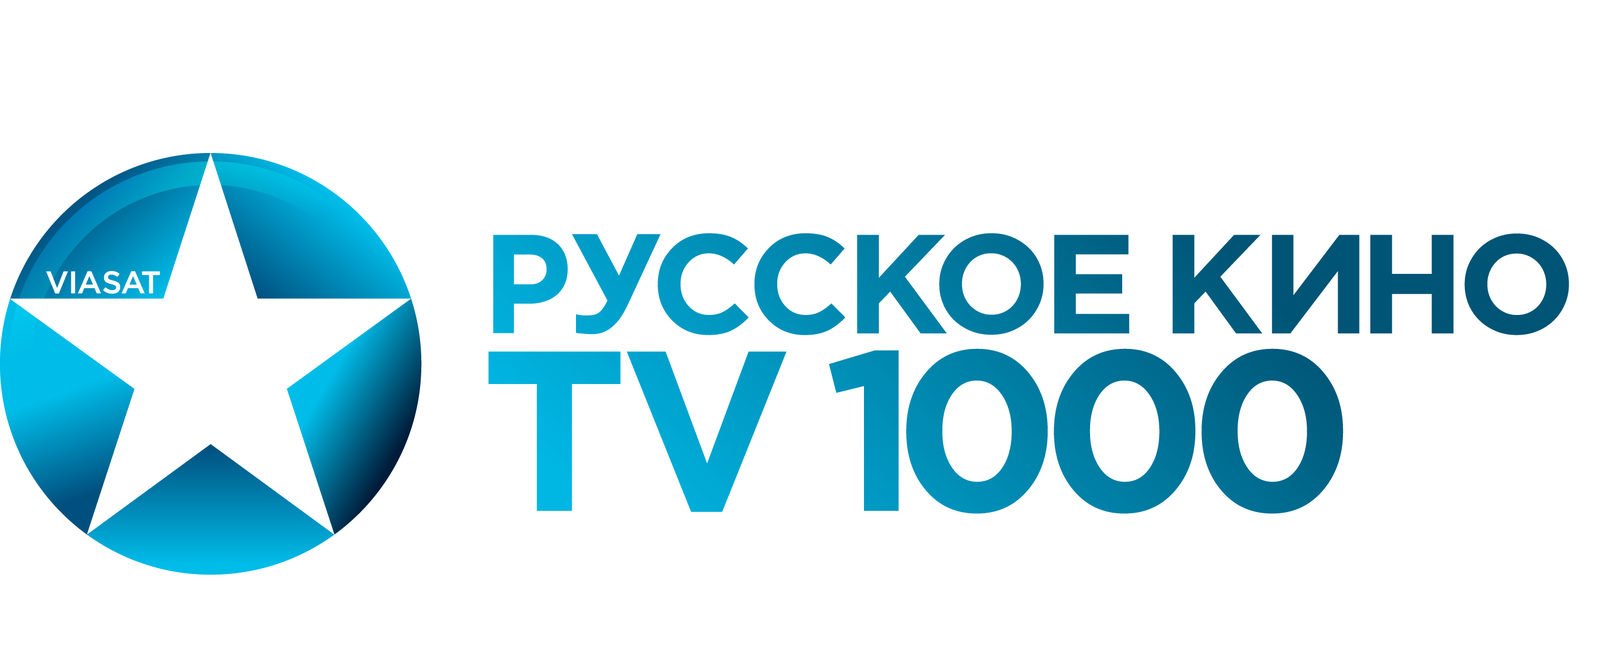 Телеканал TV1000 Русское кино отметит своё 15-летие показом фильмов «Спутник» и «Гудбай, Америка!»